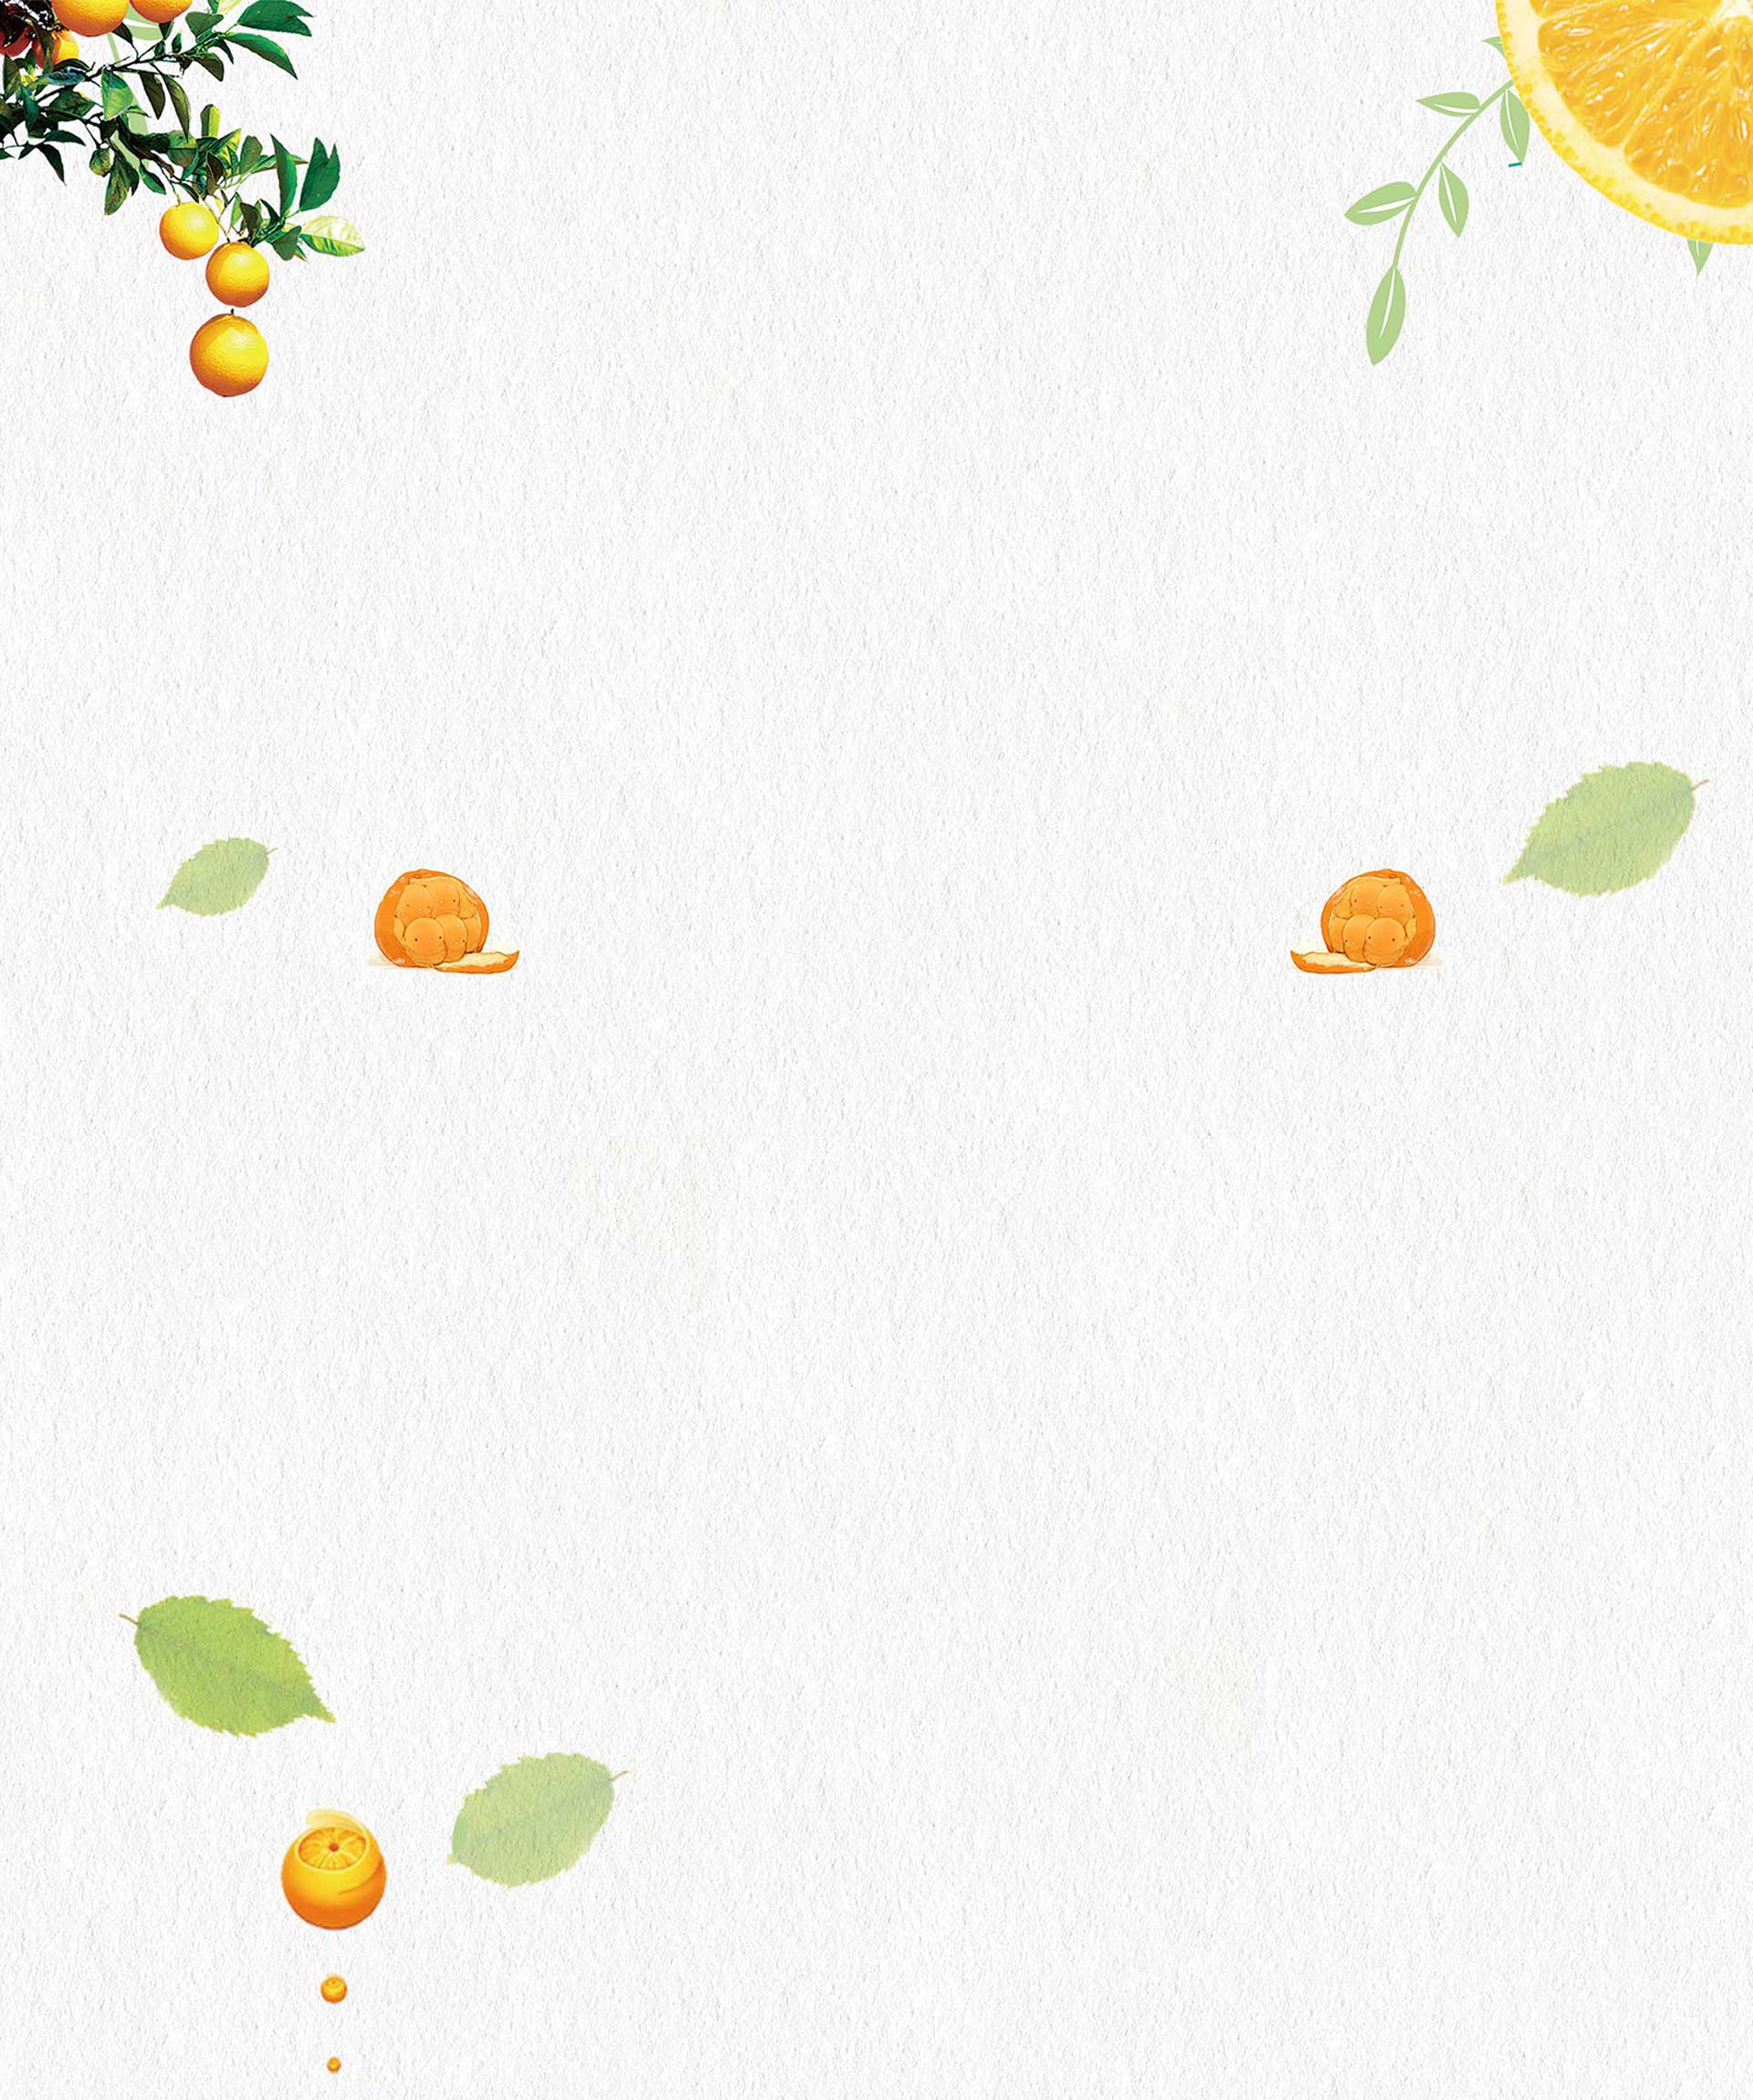 冰糖橙背景圖